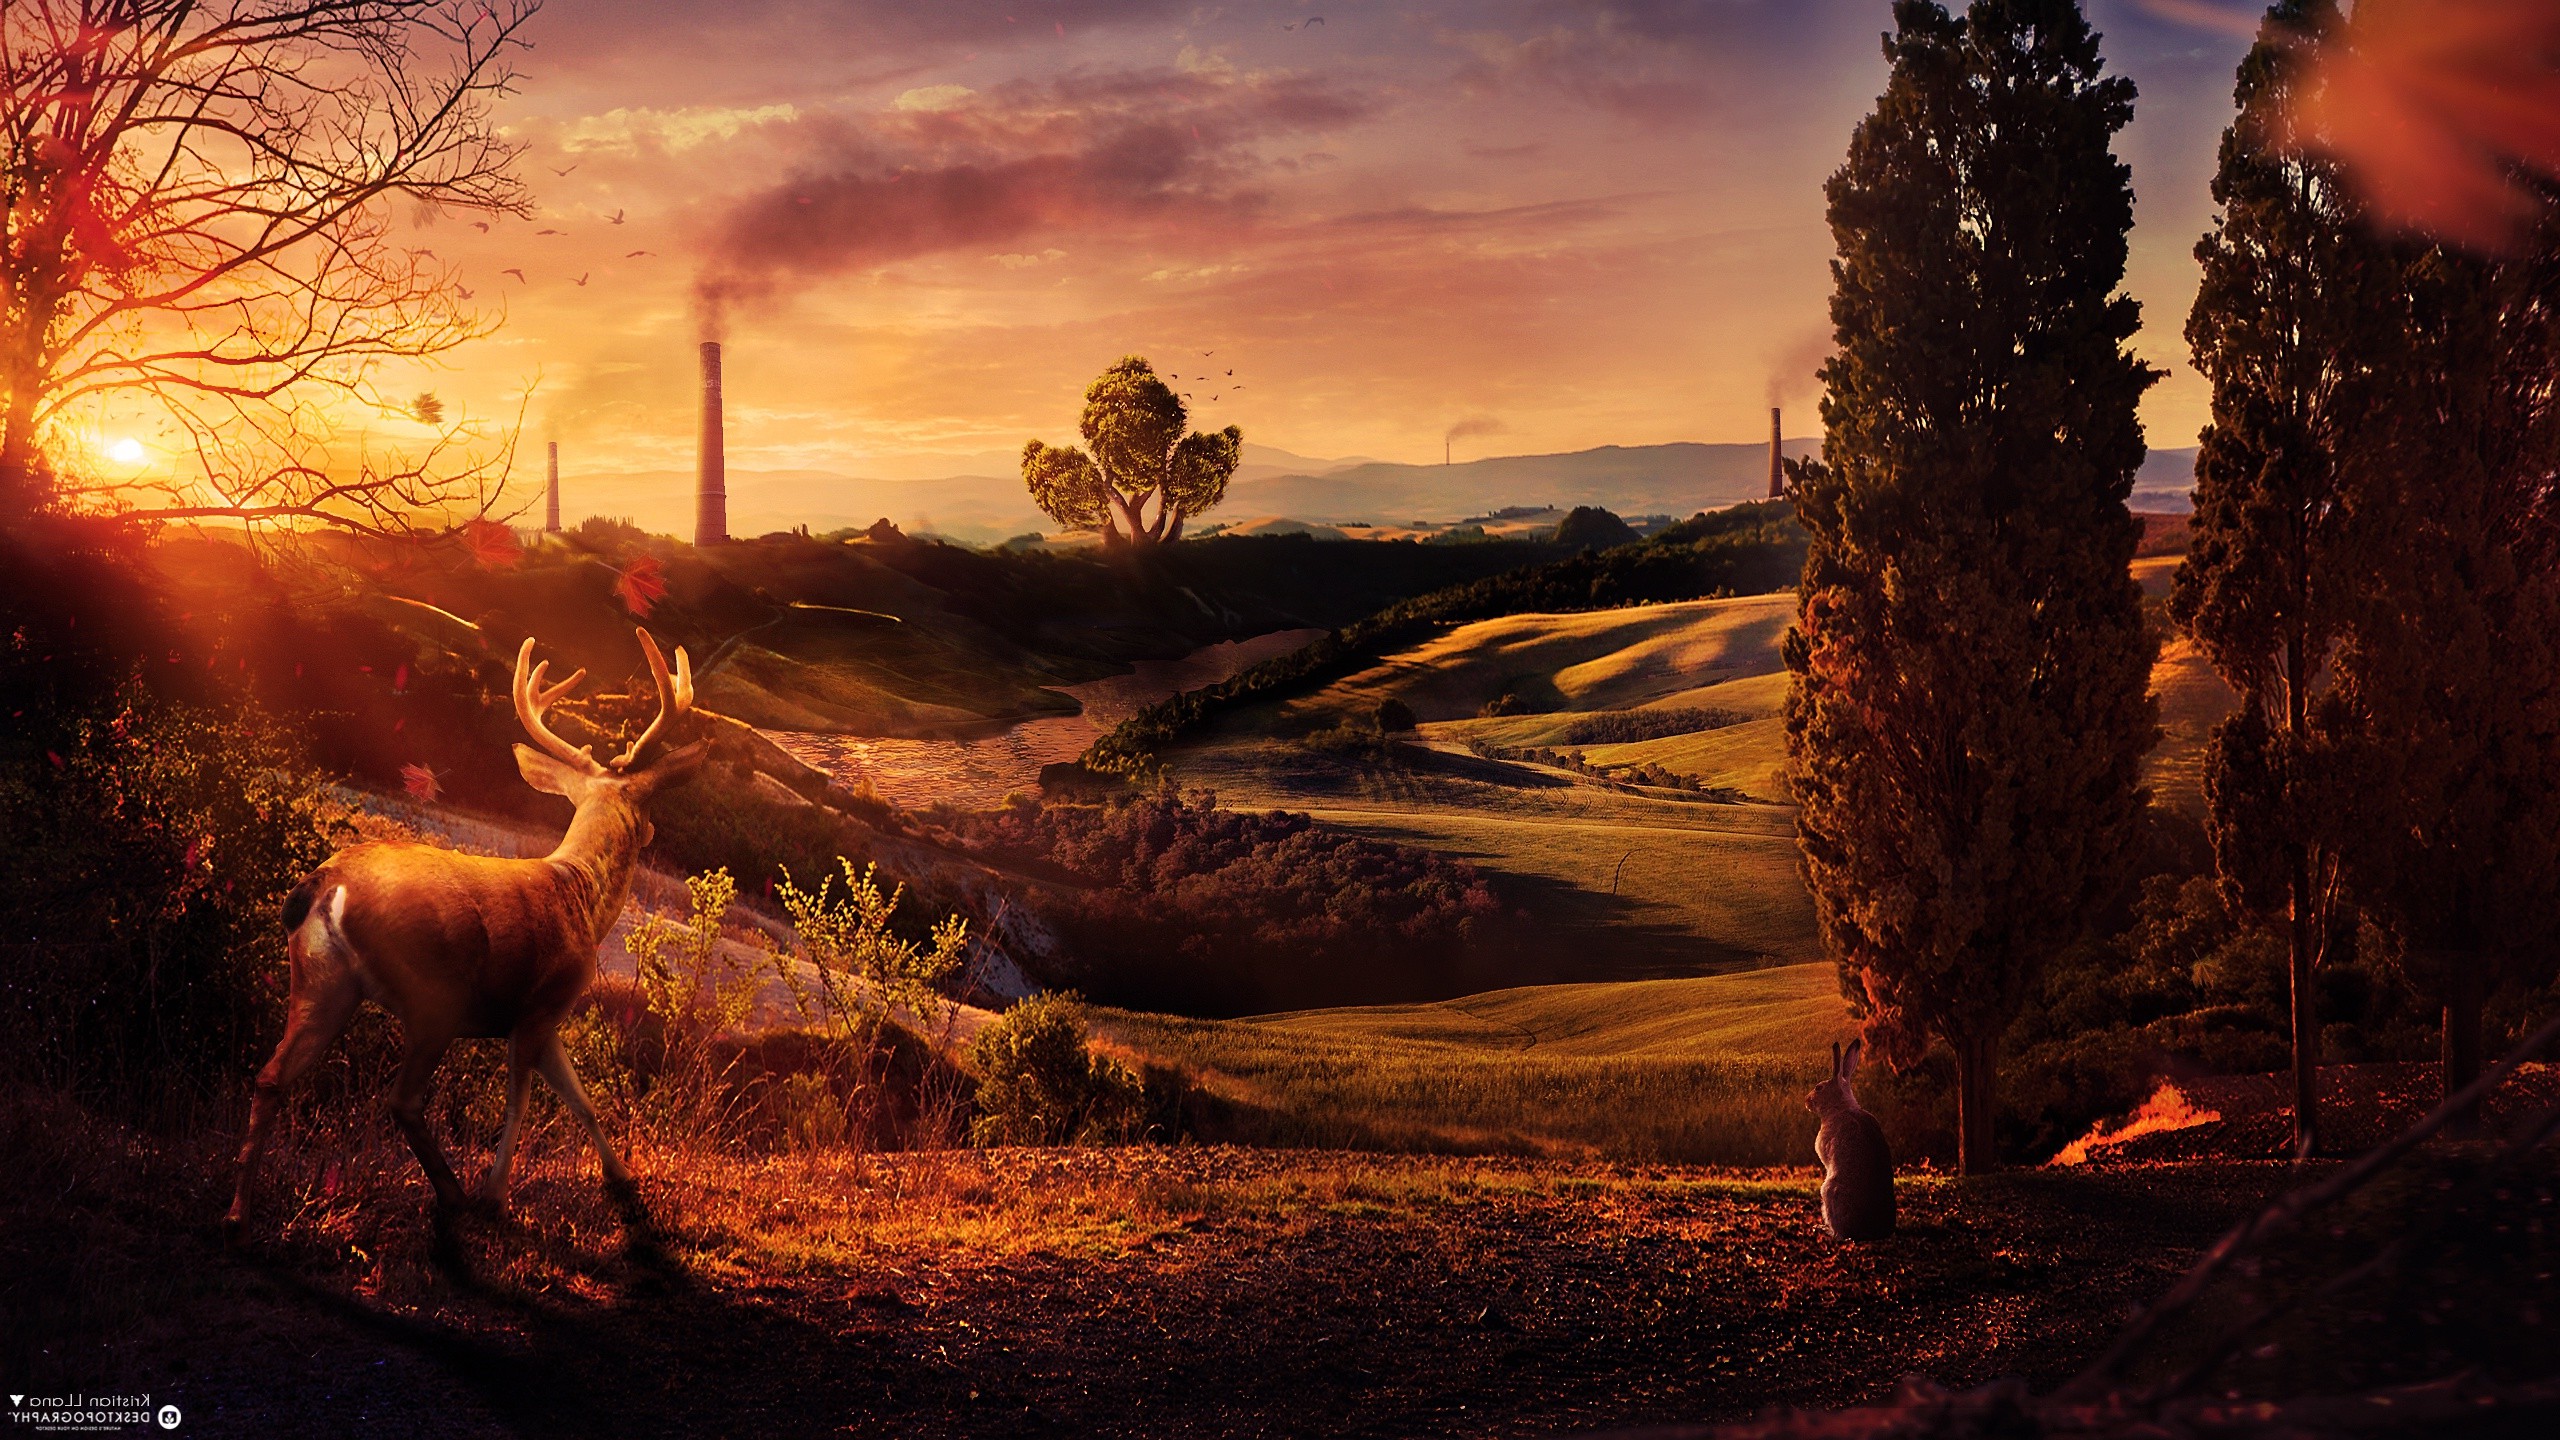 Desktopography, Nature, Landscape, Deer, Sunset, Digital Art Wallpaper